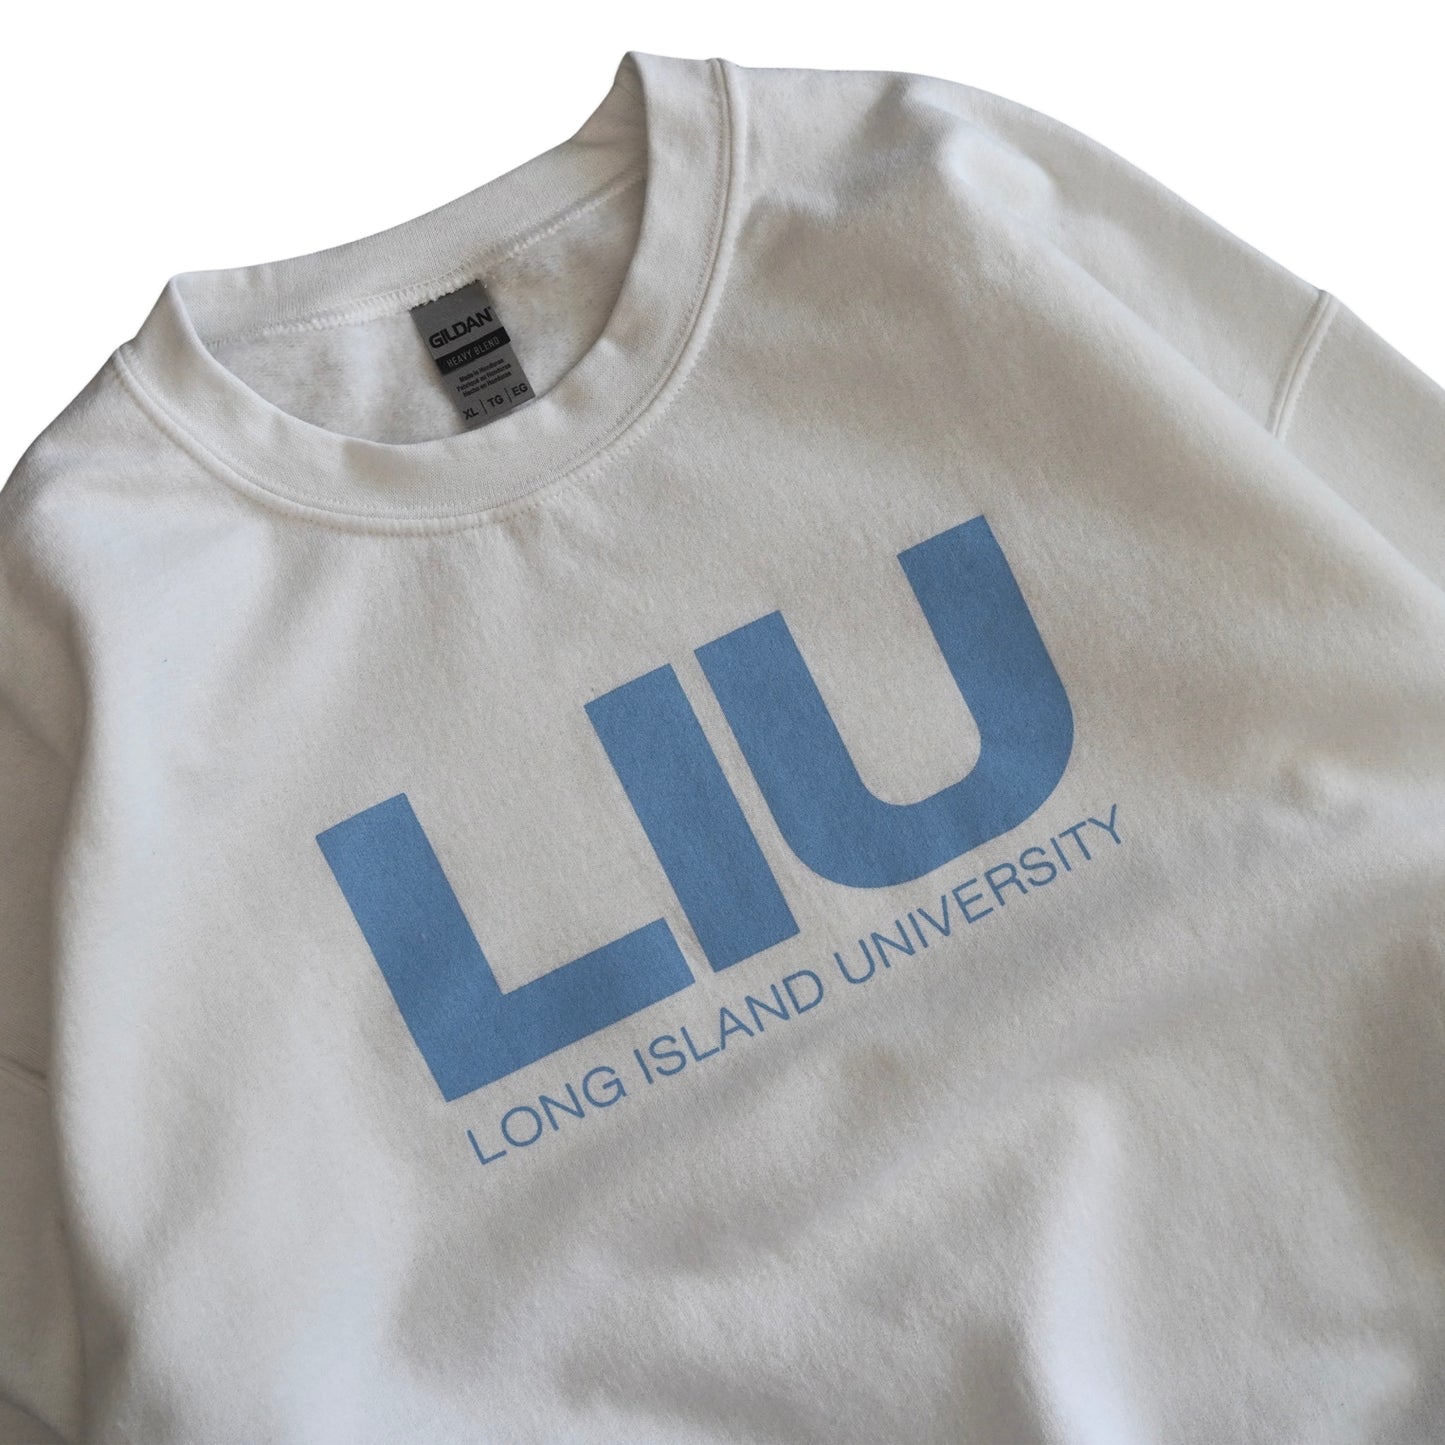 Long Island University Sweatshirt